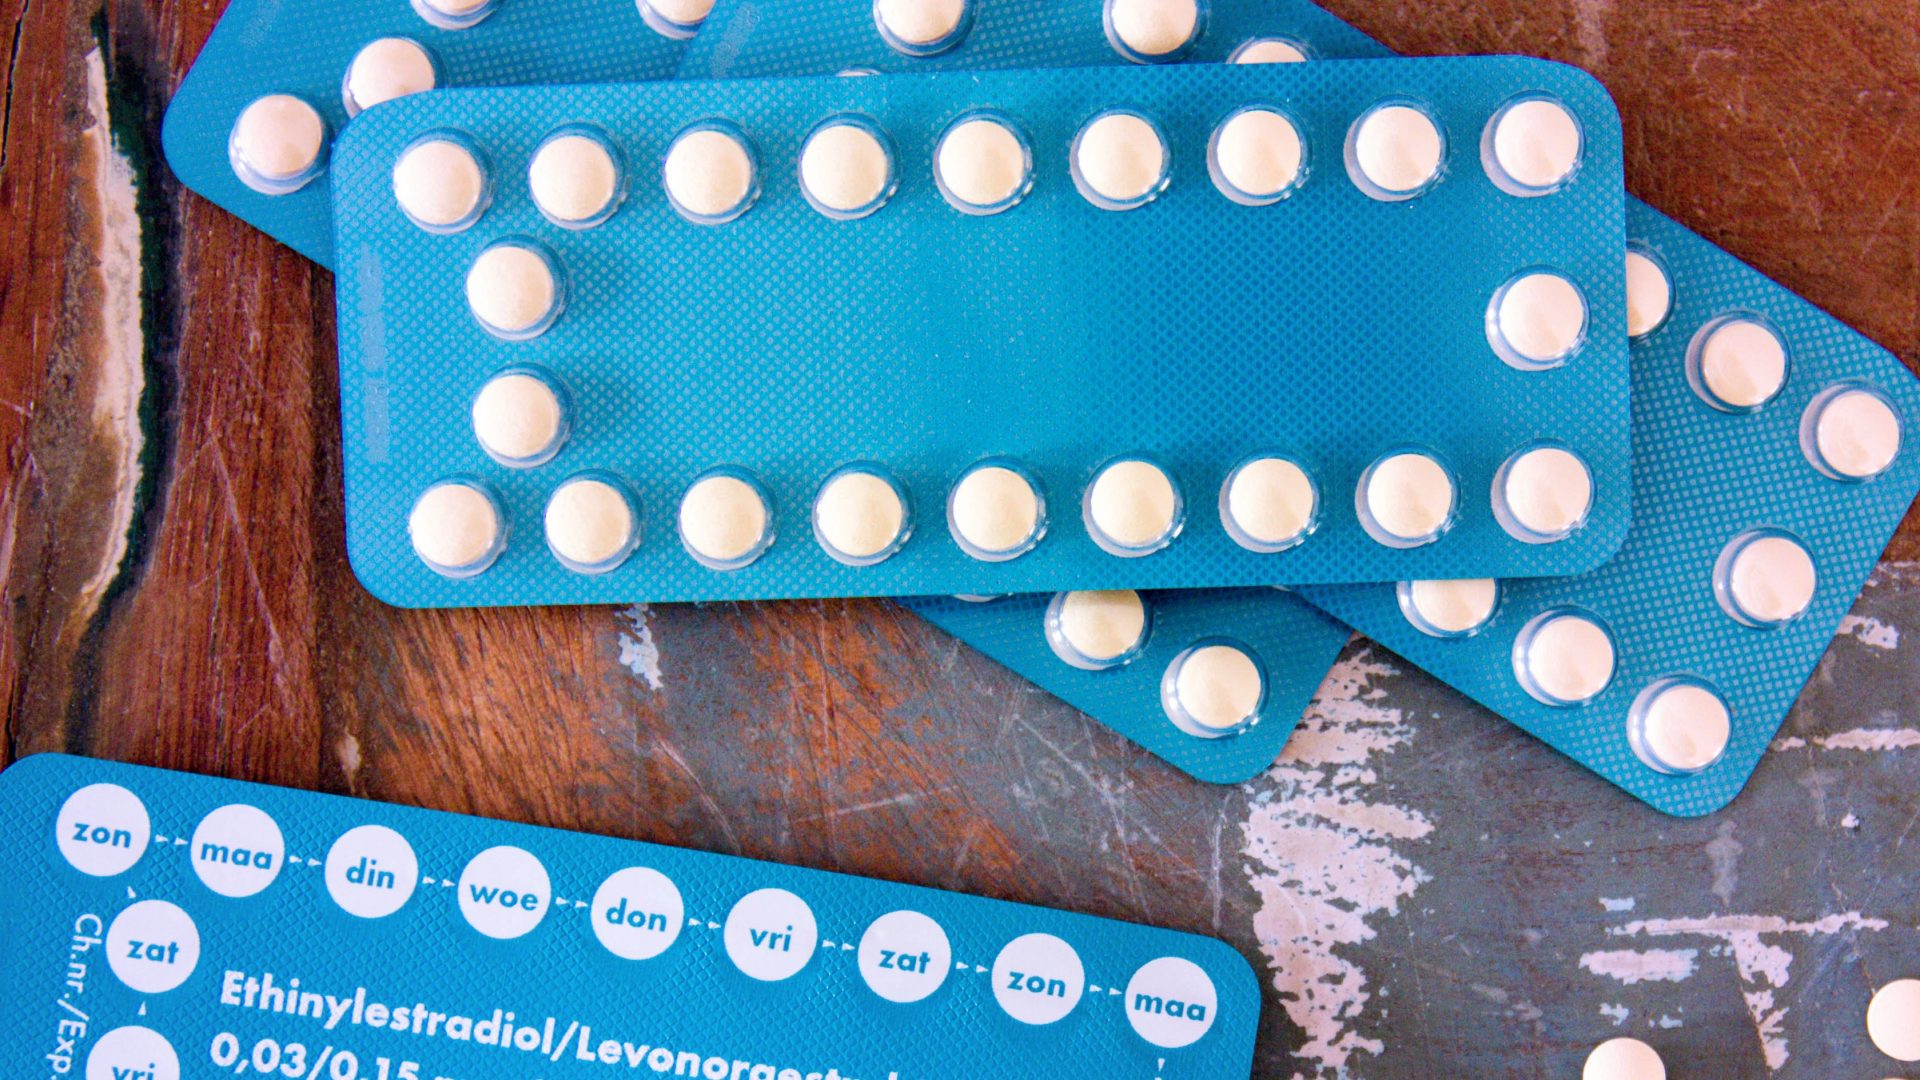 Birth control medicine. Photo by Simone van der Koelen for Unsplash.